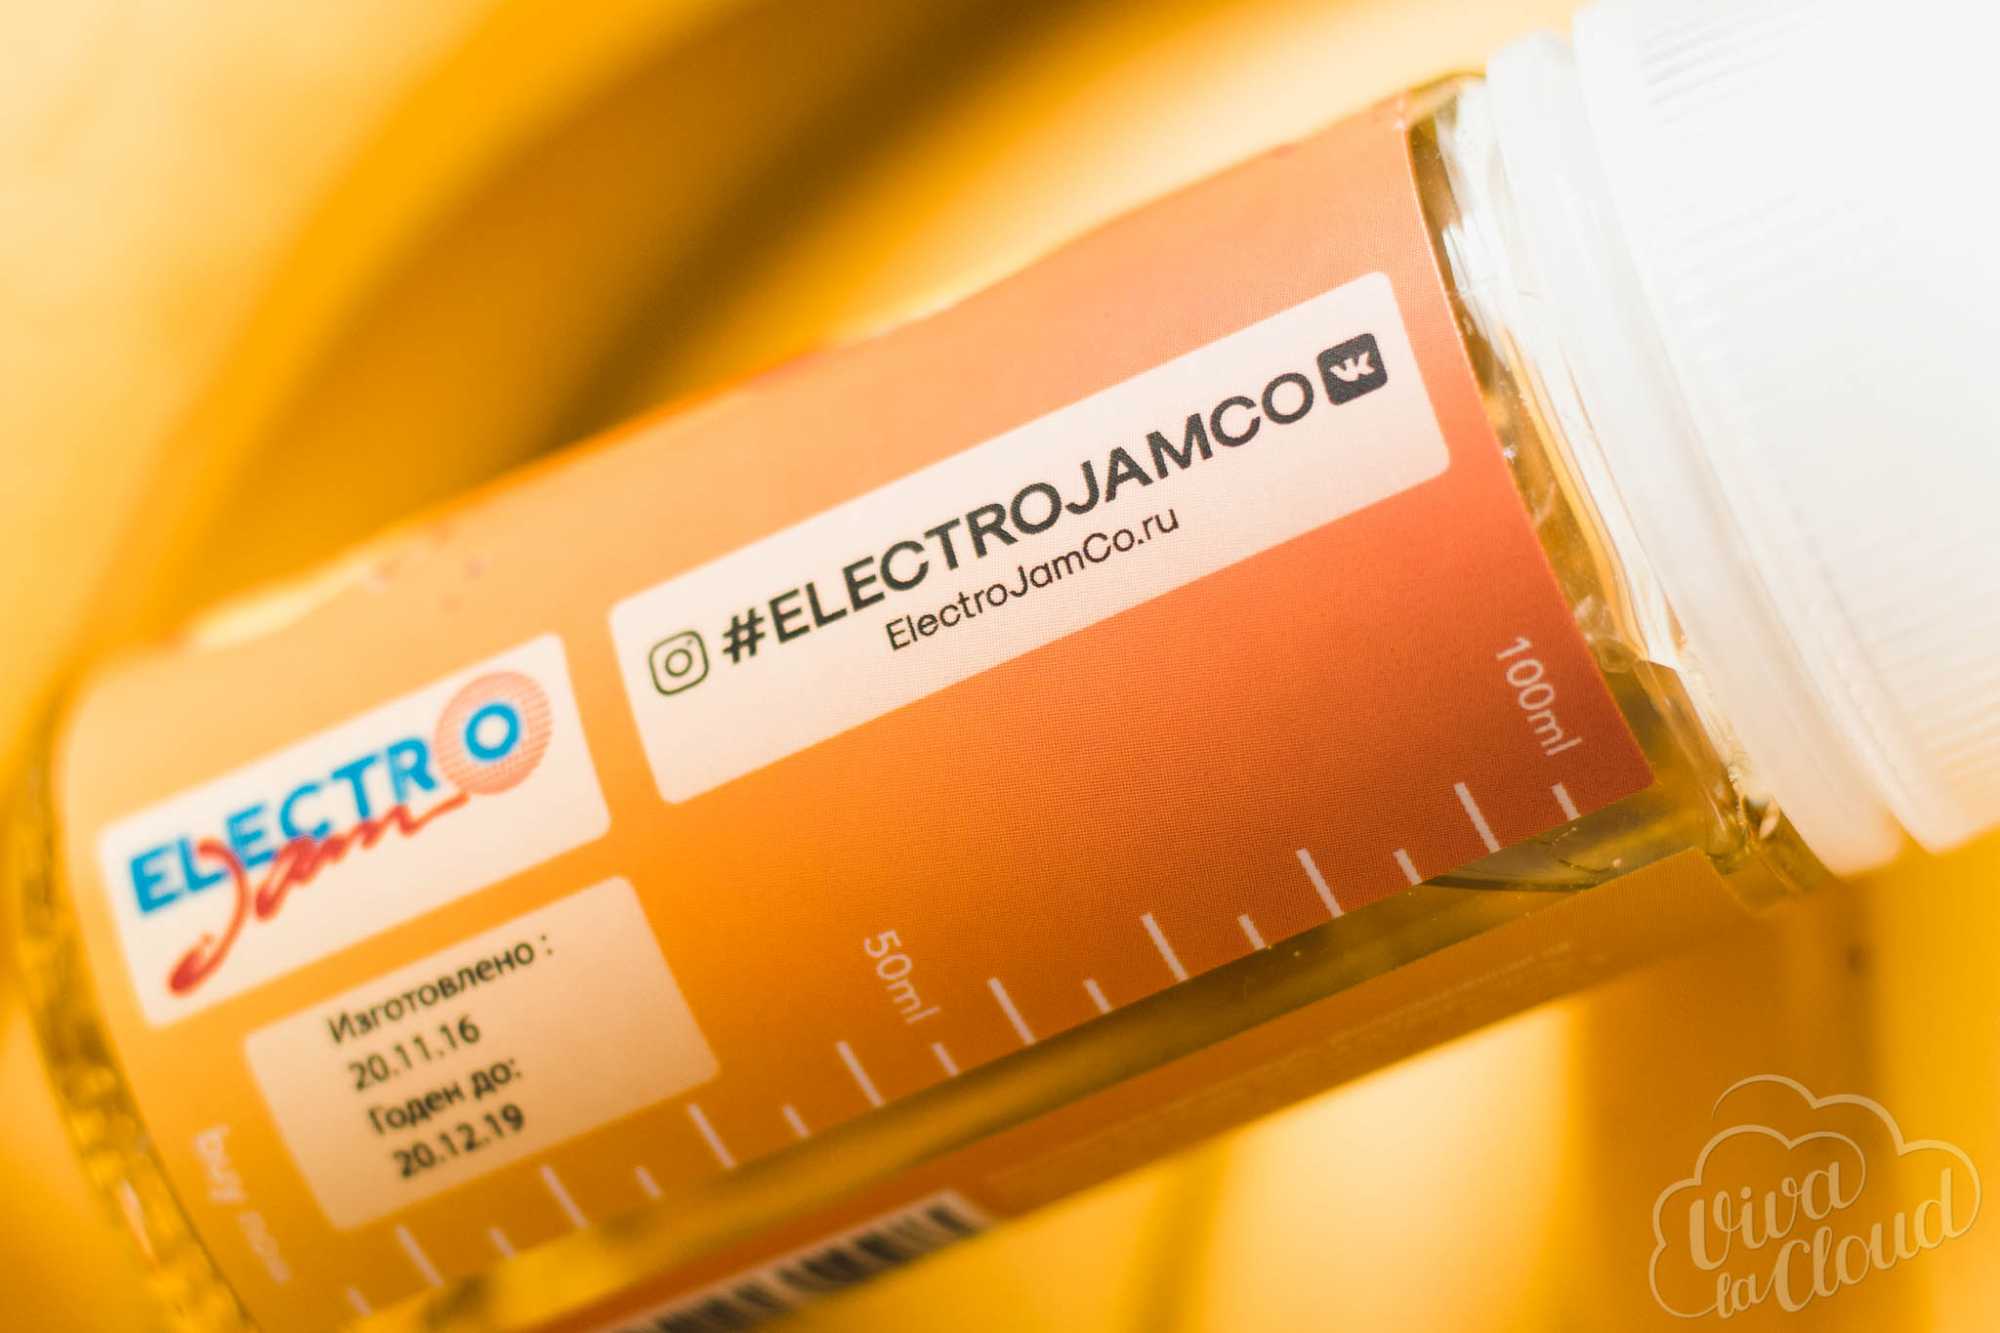 electro jam